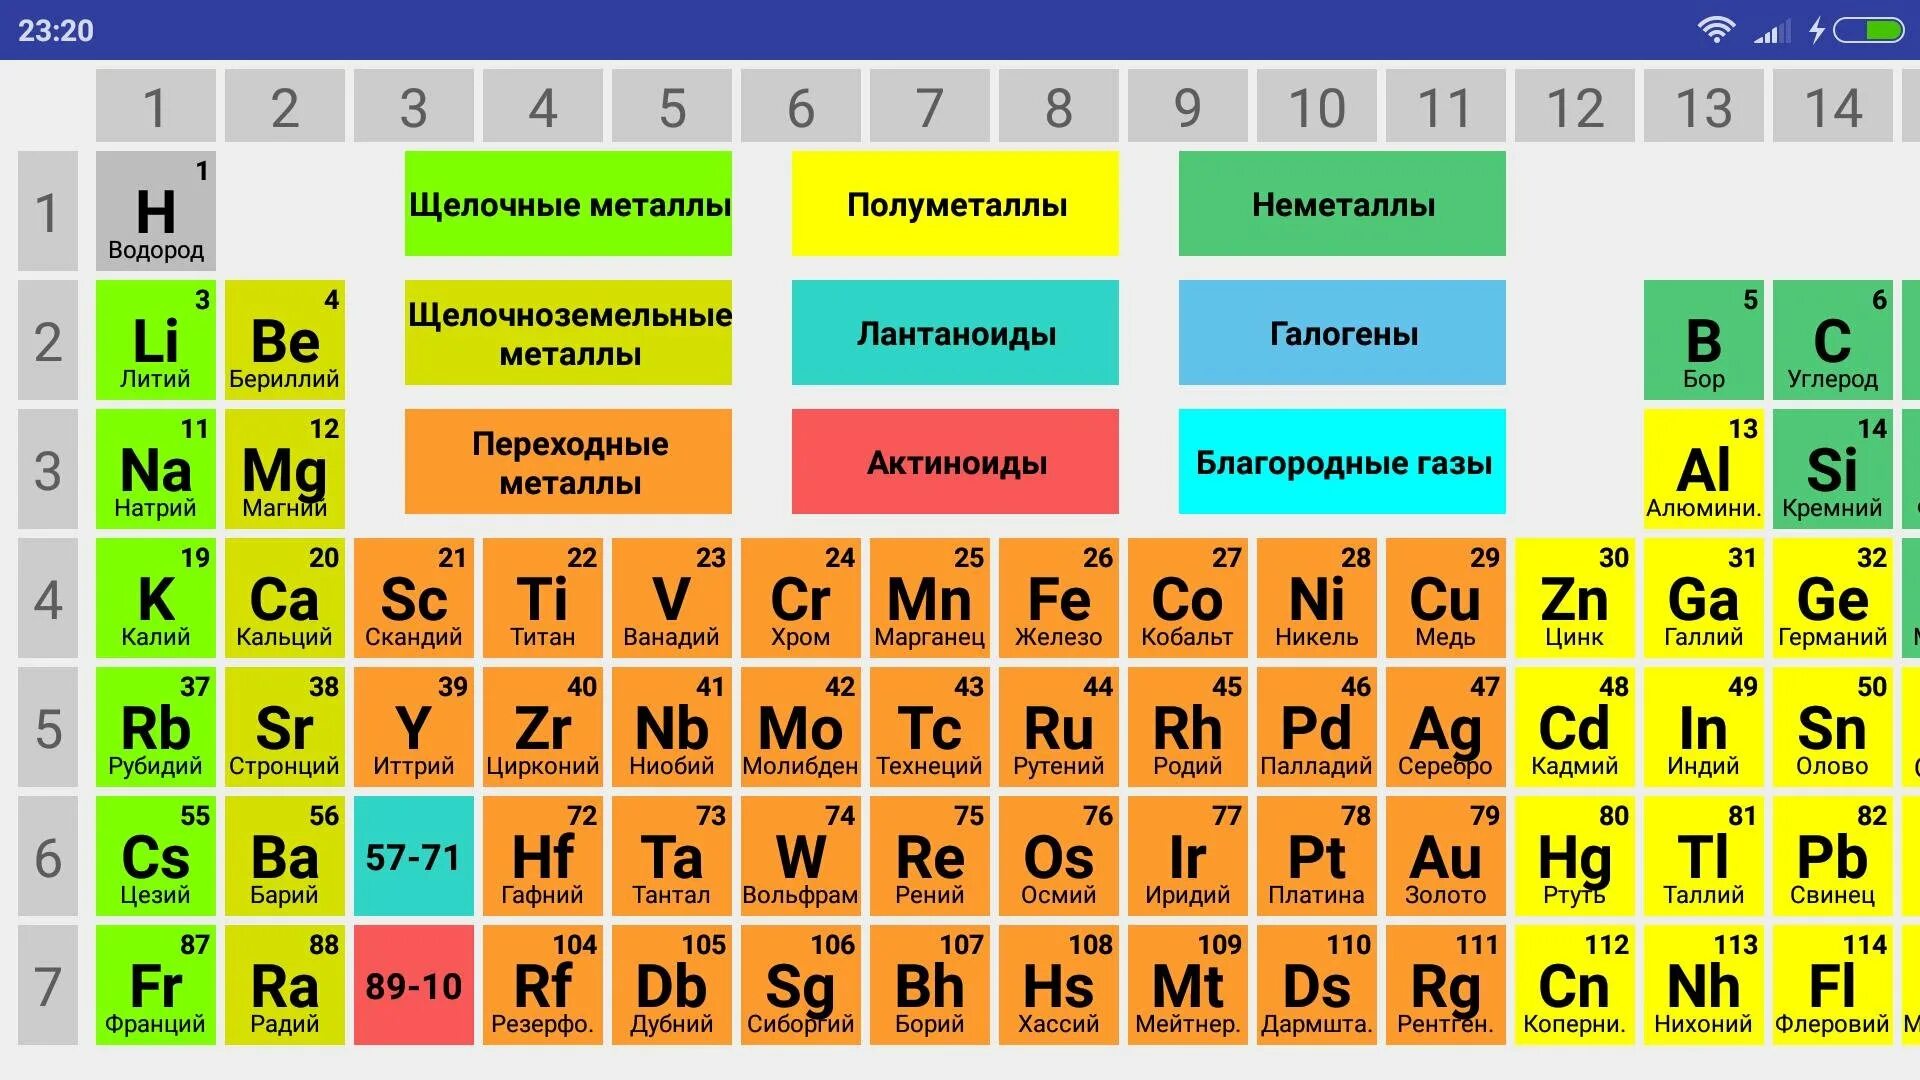 Как определить группу элемента. Таблица Менделеева галогены инертные ГАЗЫ. Химическая таблица Менделеева металлы и неметаллы. Щелочные и щелочноземельные металлы в таблице Менделеева. Периодическая таблица системы металлов неметаллов.